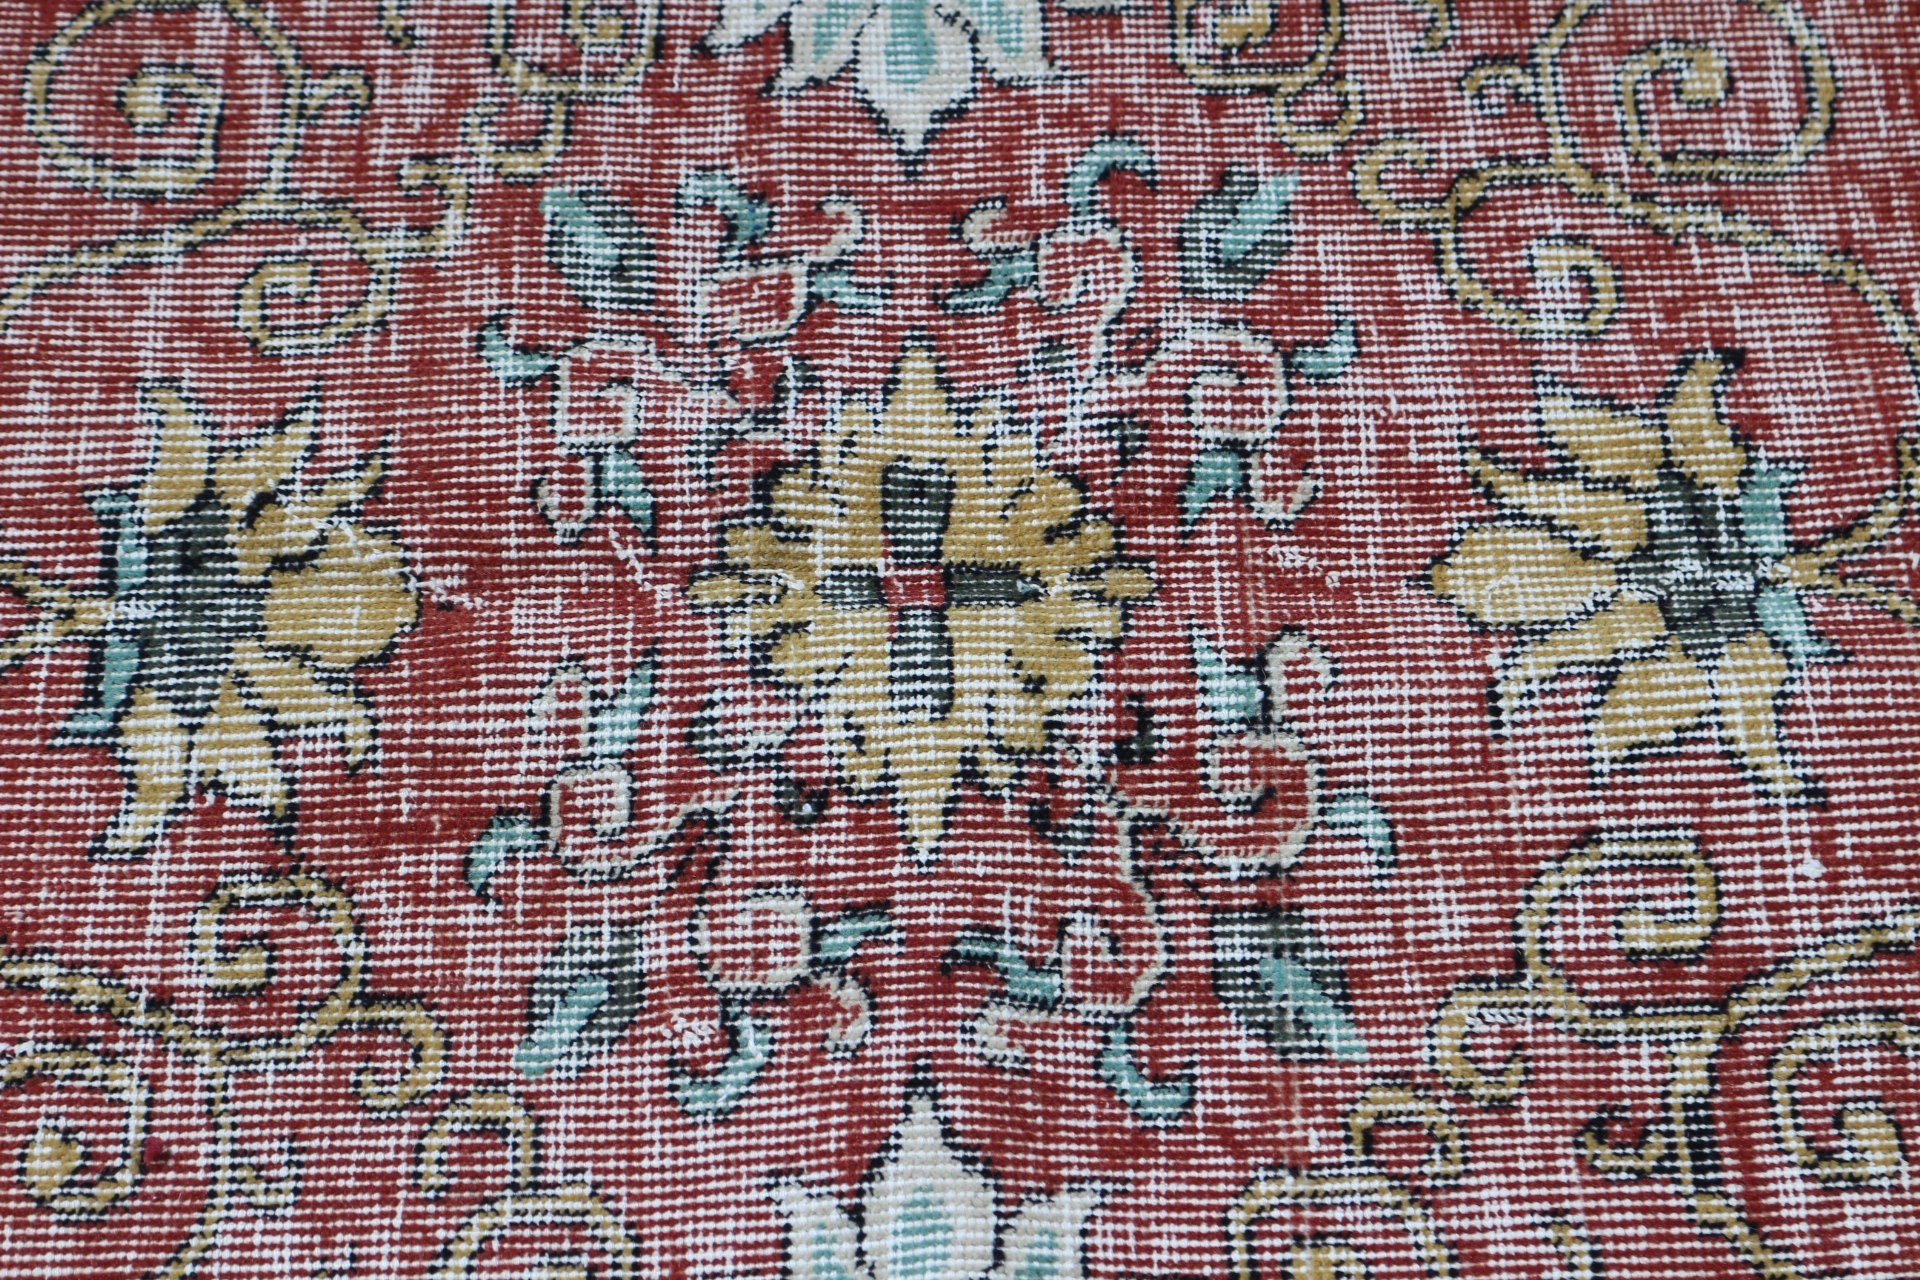 Turkish Rugs, Vintage Rugs, 5.1x8.2 ft Large Rug, Oushak Rug, Orange Wool Rug, Living Room Rugs, Floor Rug, Bedroom Rug, Decorative Rugs